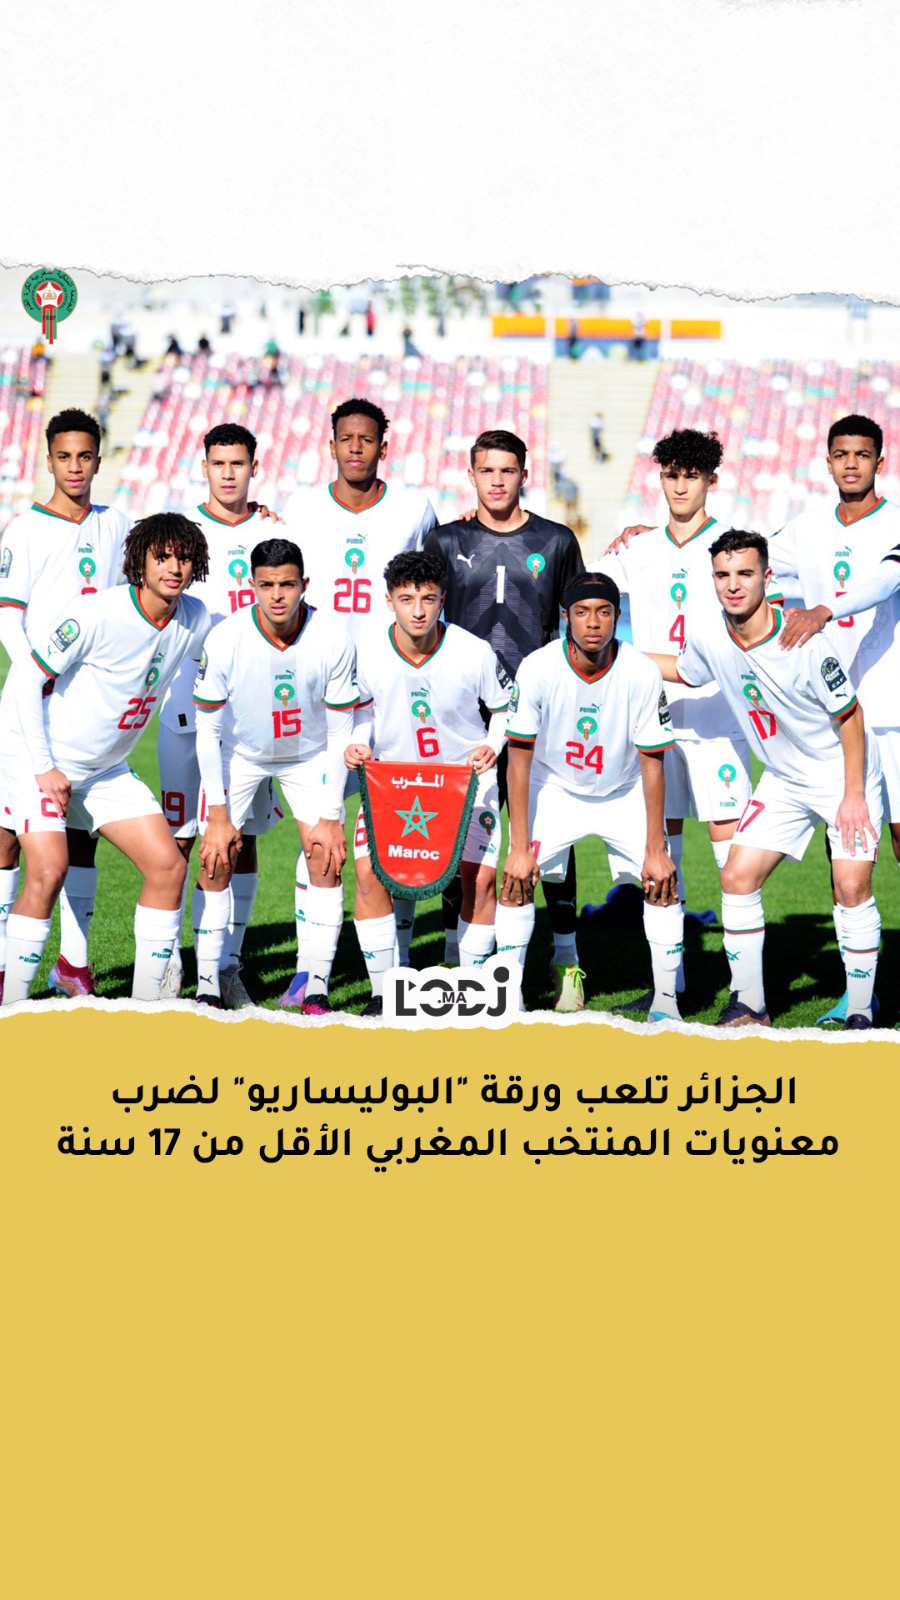 الجزائر تلعب ورقة "البوليساريو" لضرب معنويات المنتخب المغربي الأقل من 17 سنة